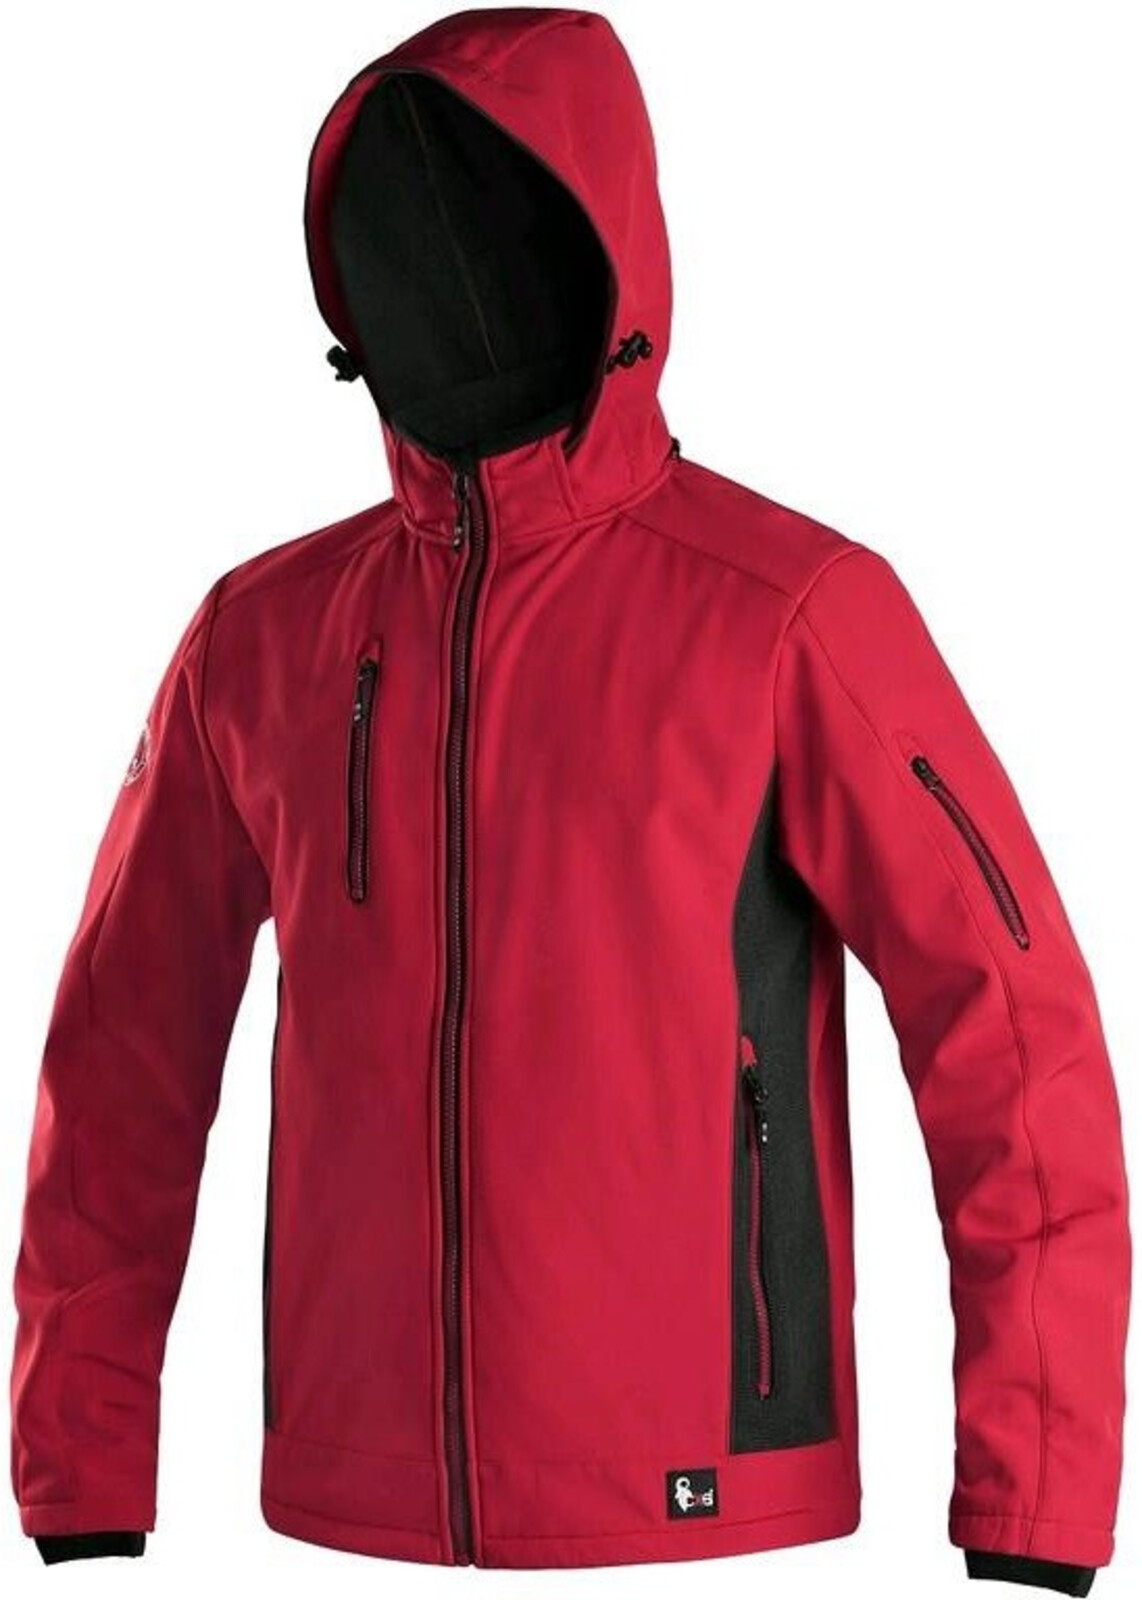 Pánska softshellová bunda CXS Durham - veľkosť: S, farba: červená/čierna